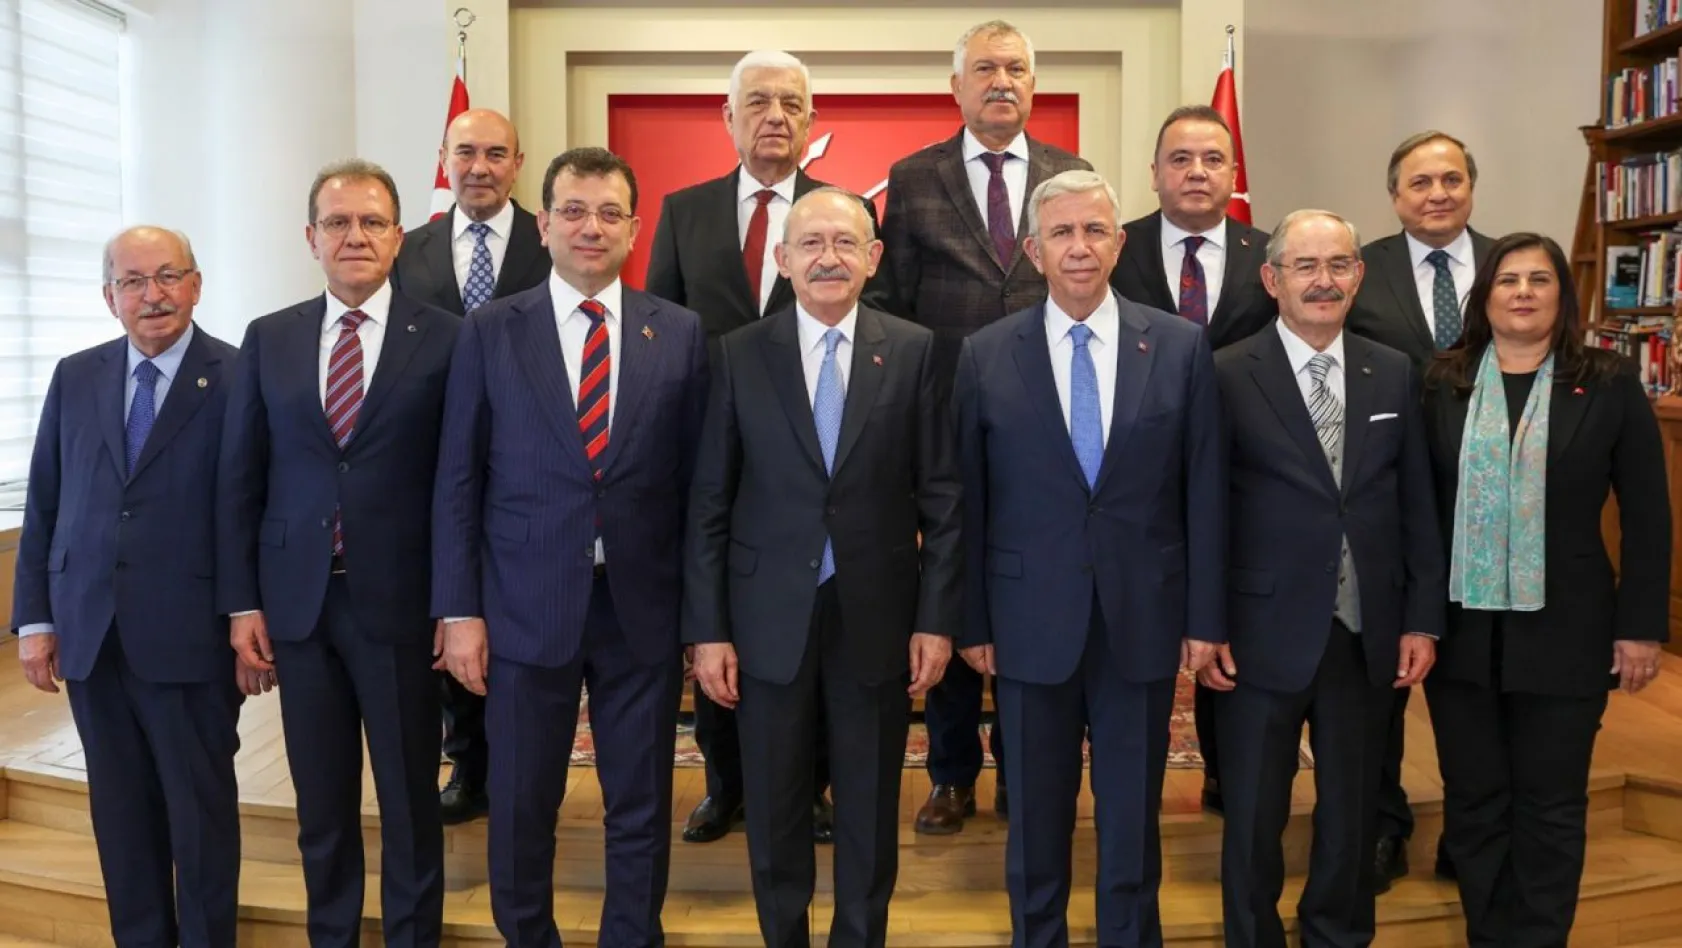 CHP'li başkanlar Kılıçdaroğlu ile görüştü